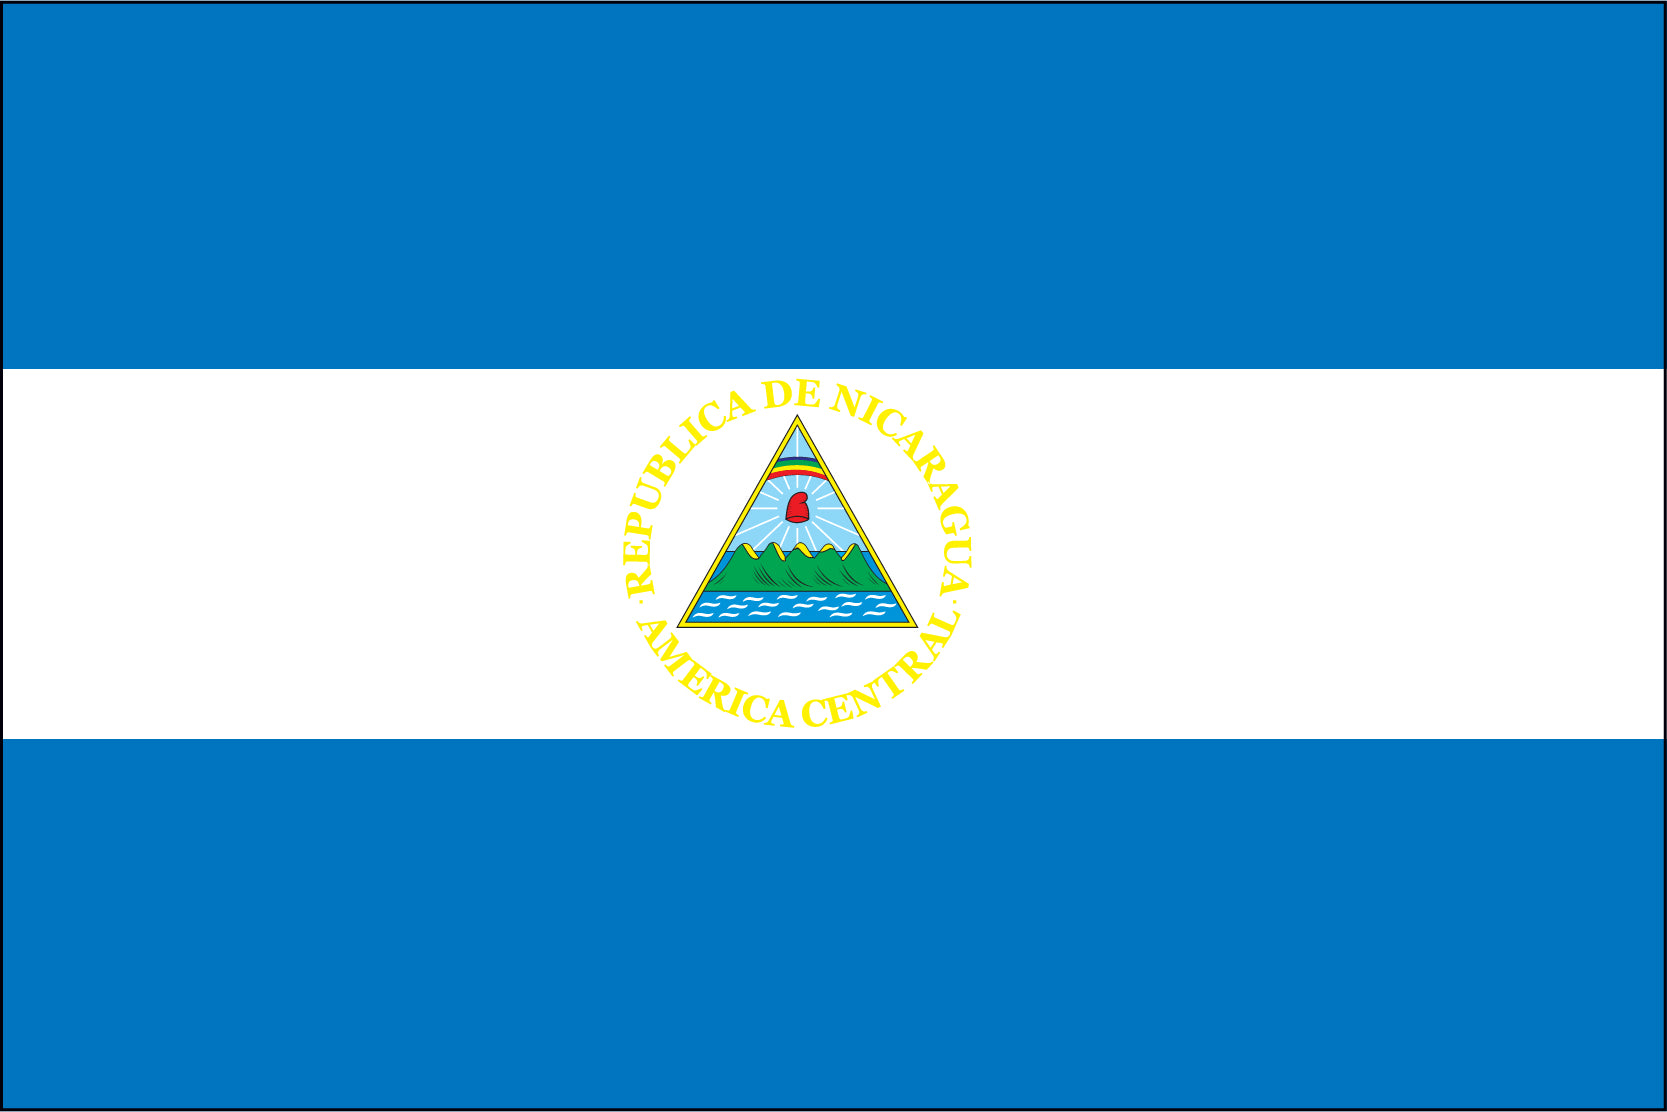 Nicaragua (Governmental Seal)